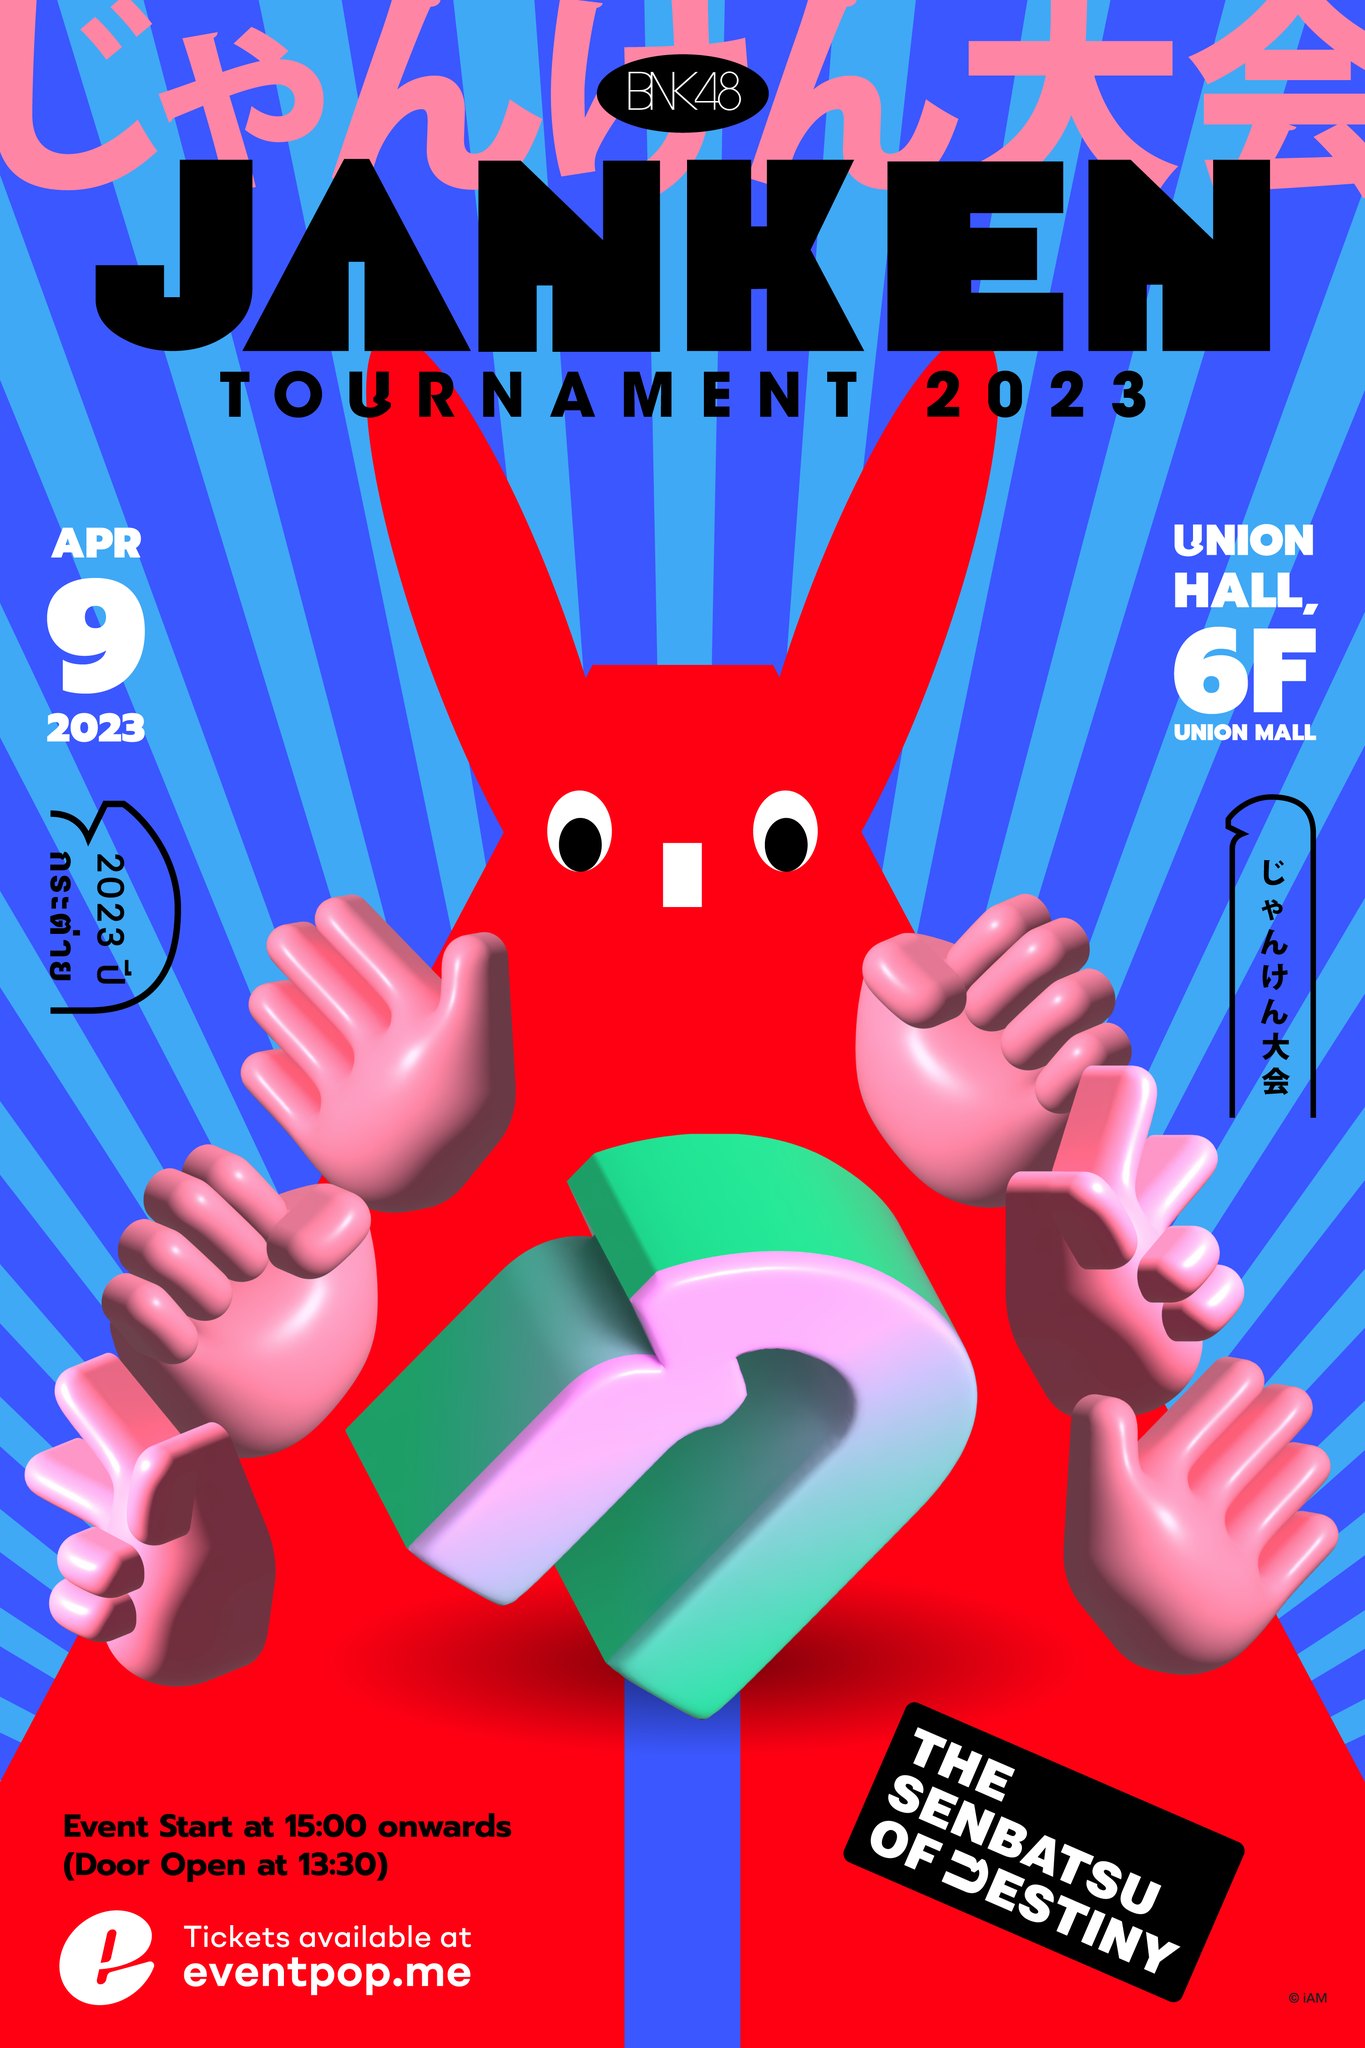 BNK48 Janken Tournament 2023